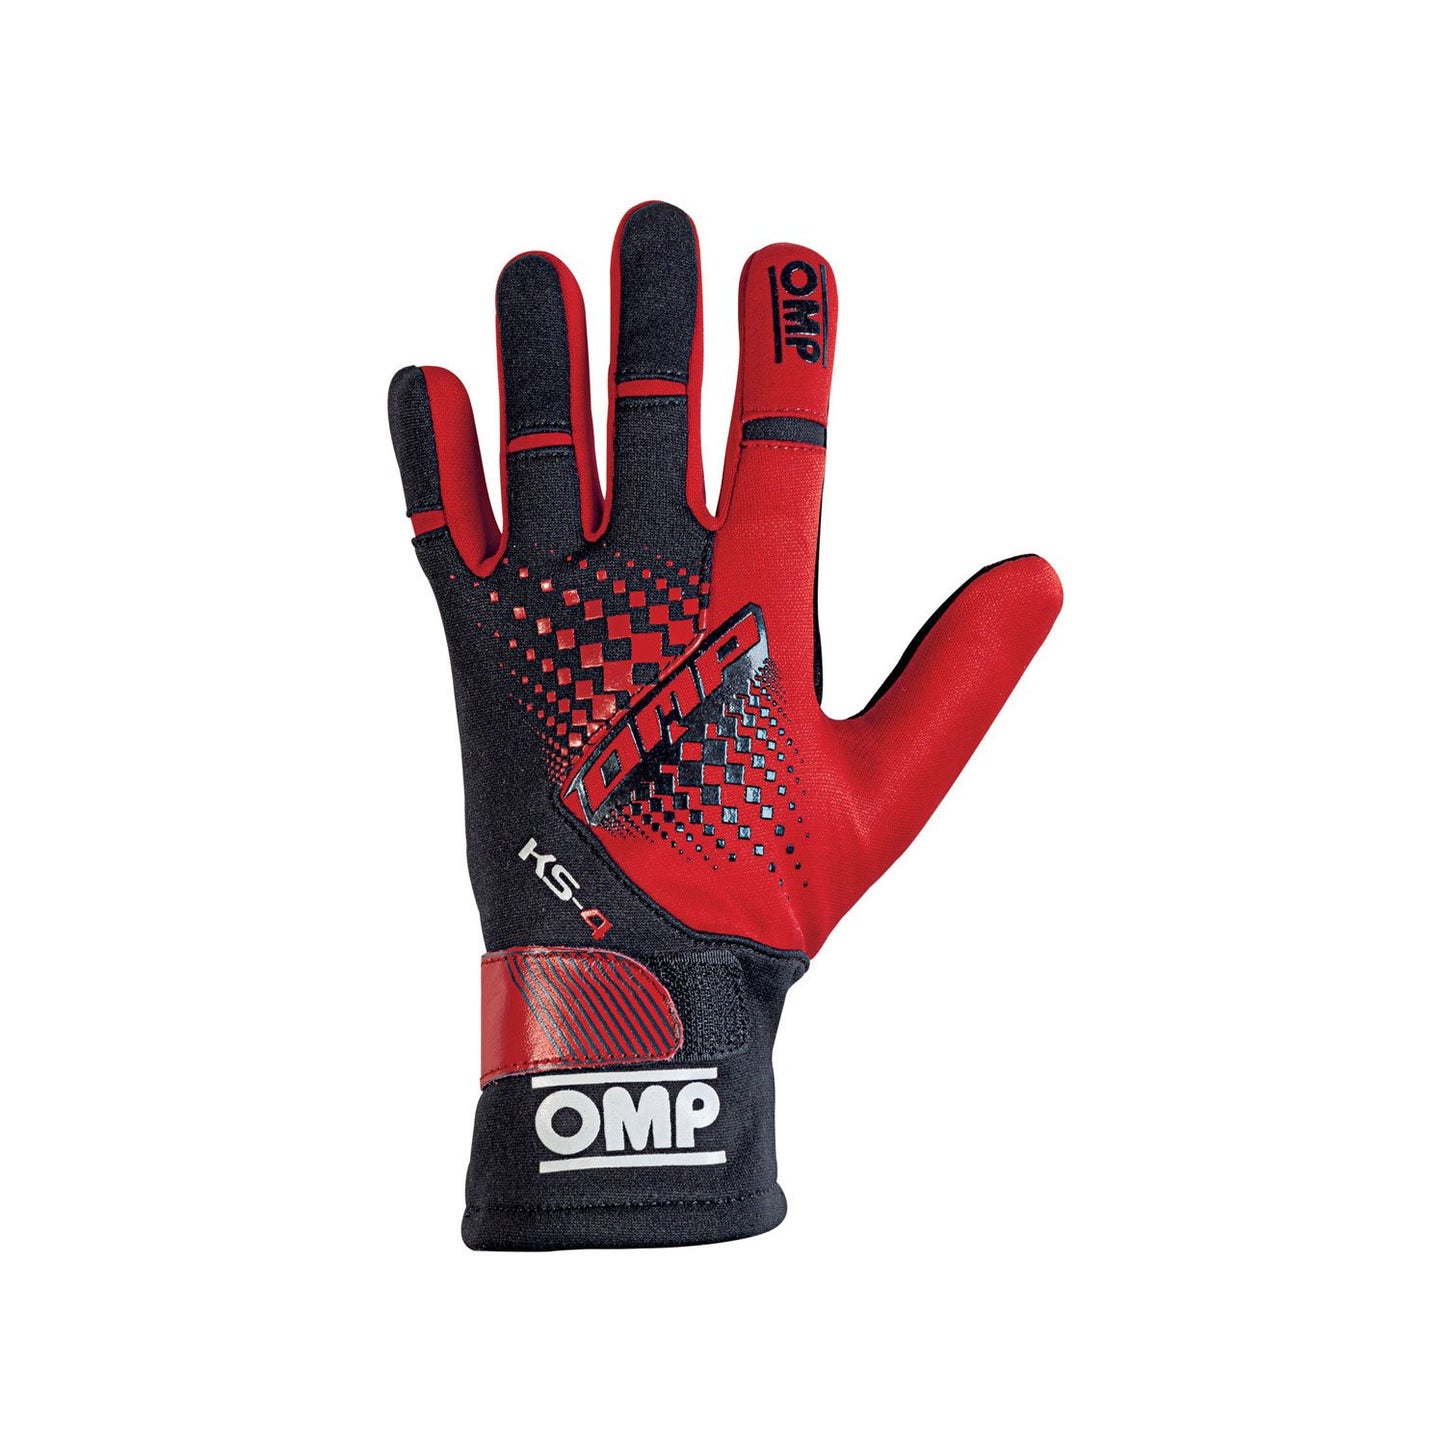 OMP KS-4 MY18 Karting Gloves